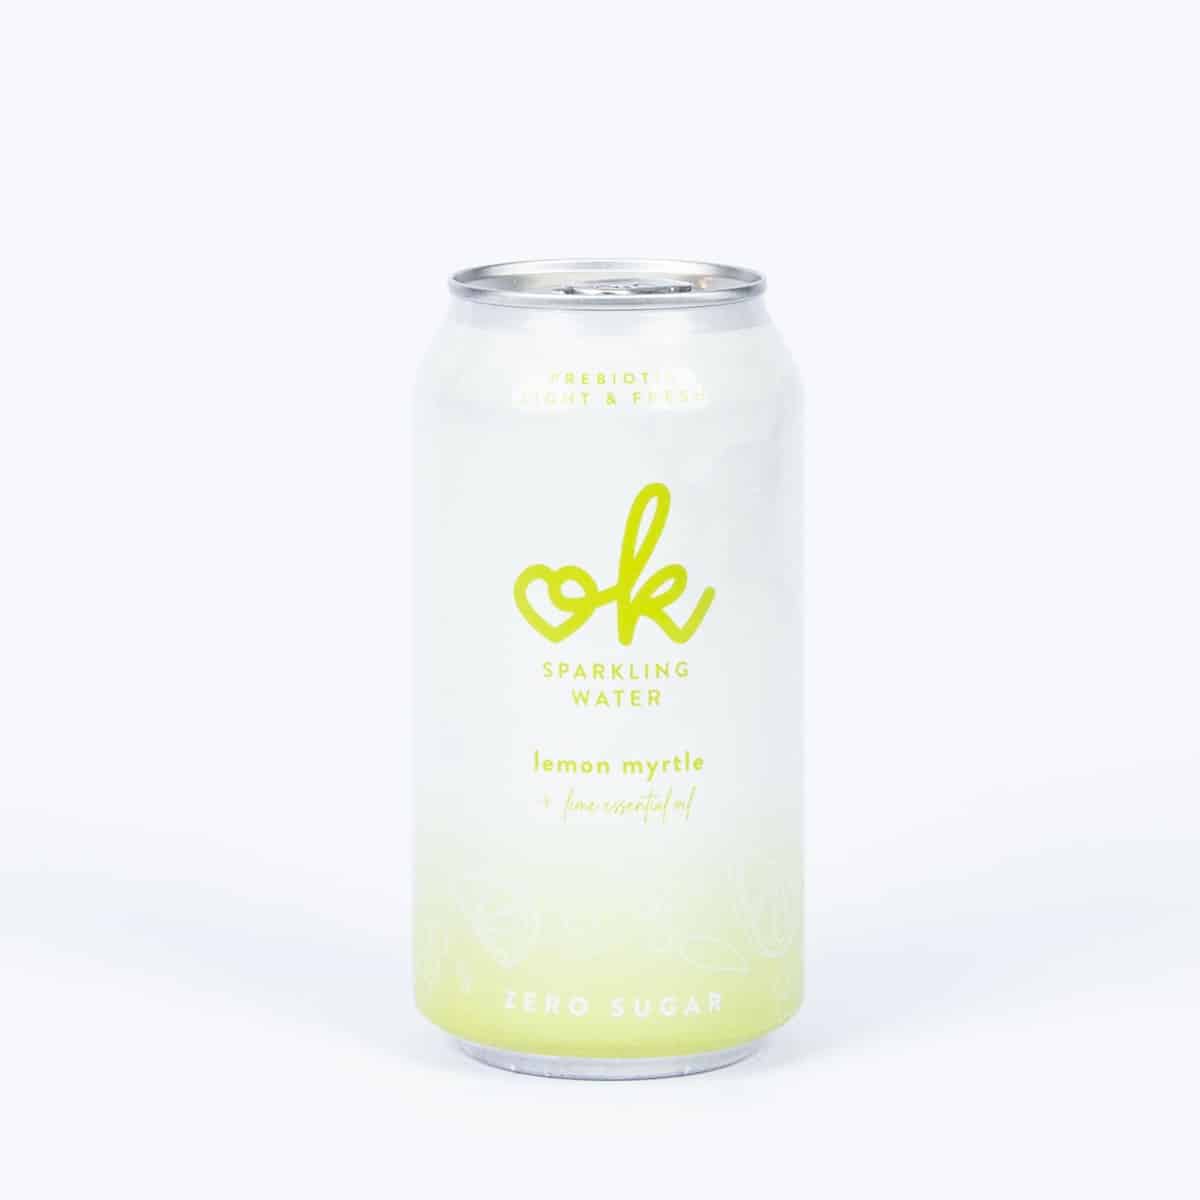 OK Sparkling Water — Lemon Myrtle